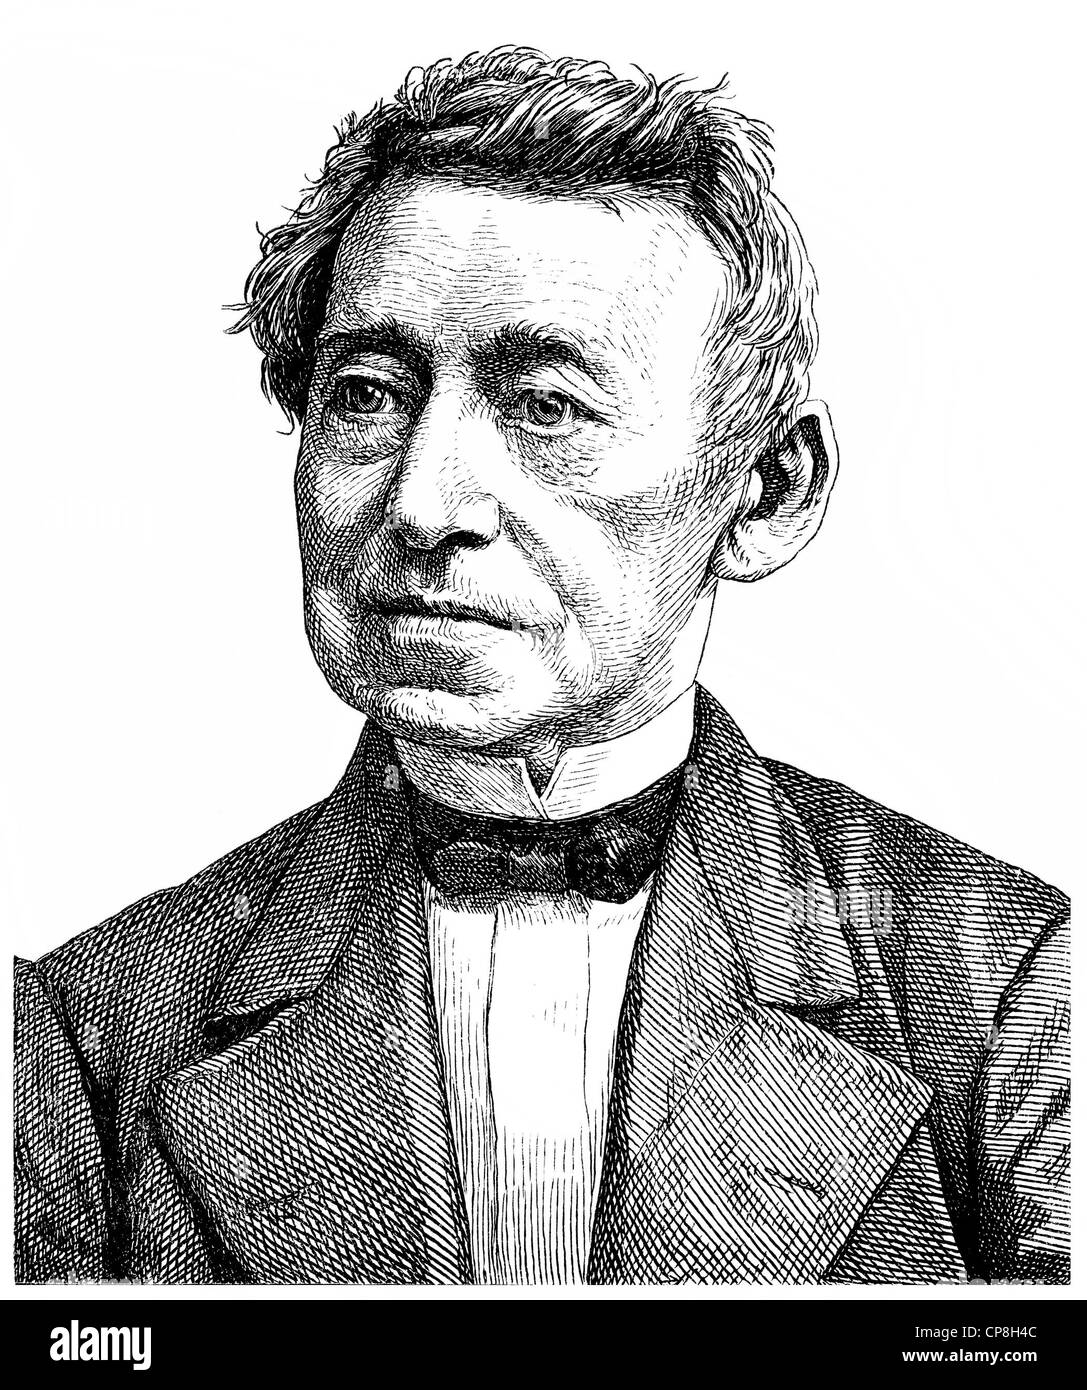 Karl Joseph Georg Sigismund Waechter oder Carl Georg Waechter, 1797 - 1880, un avocat allemand, professeur et homme politique, Historisc Banque D'Images